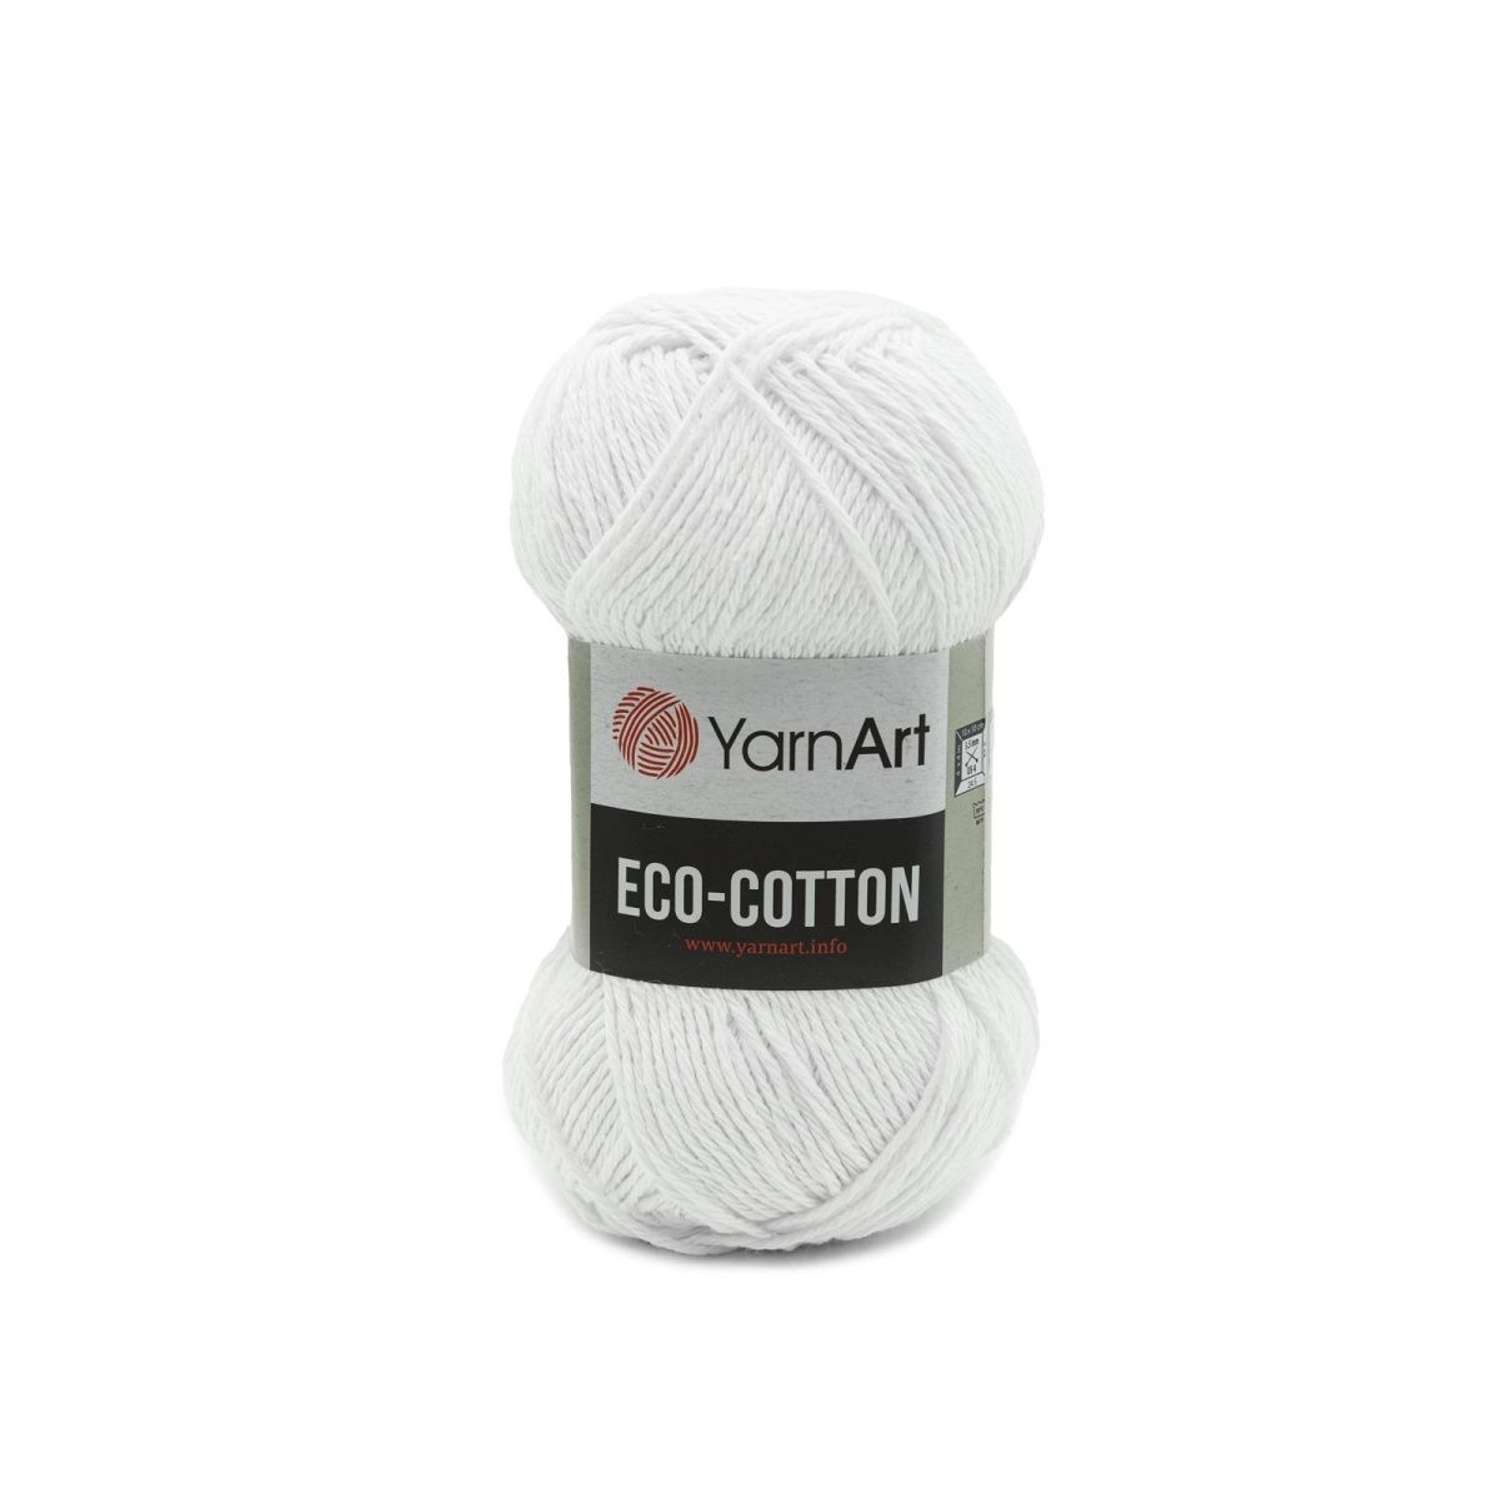 Пряжа YarnArt Eco Cotton комфортная для летних вещей 100 г 220 м 760 белый 5 мотков - фото 6